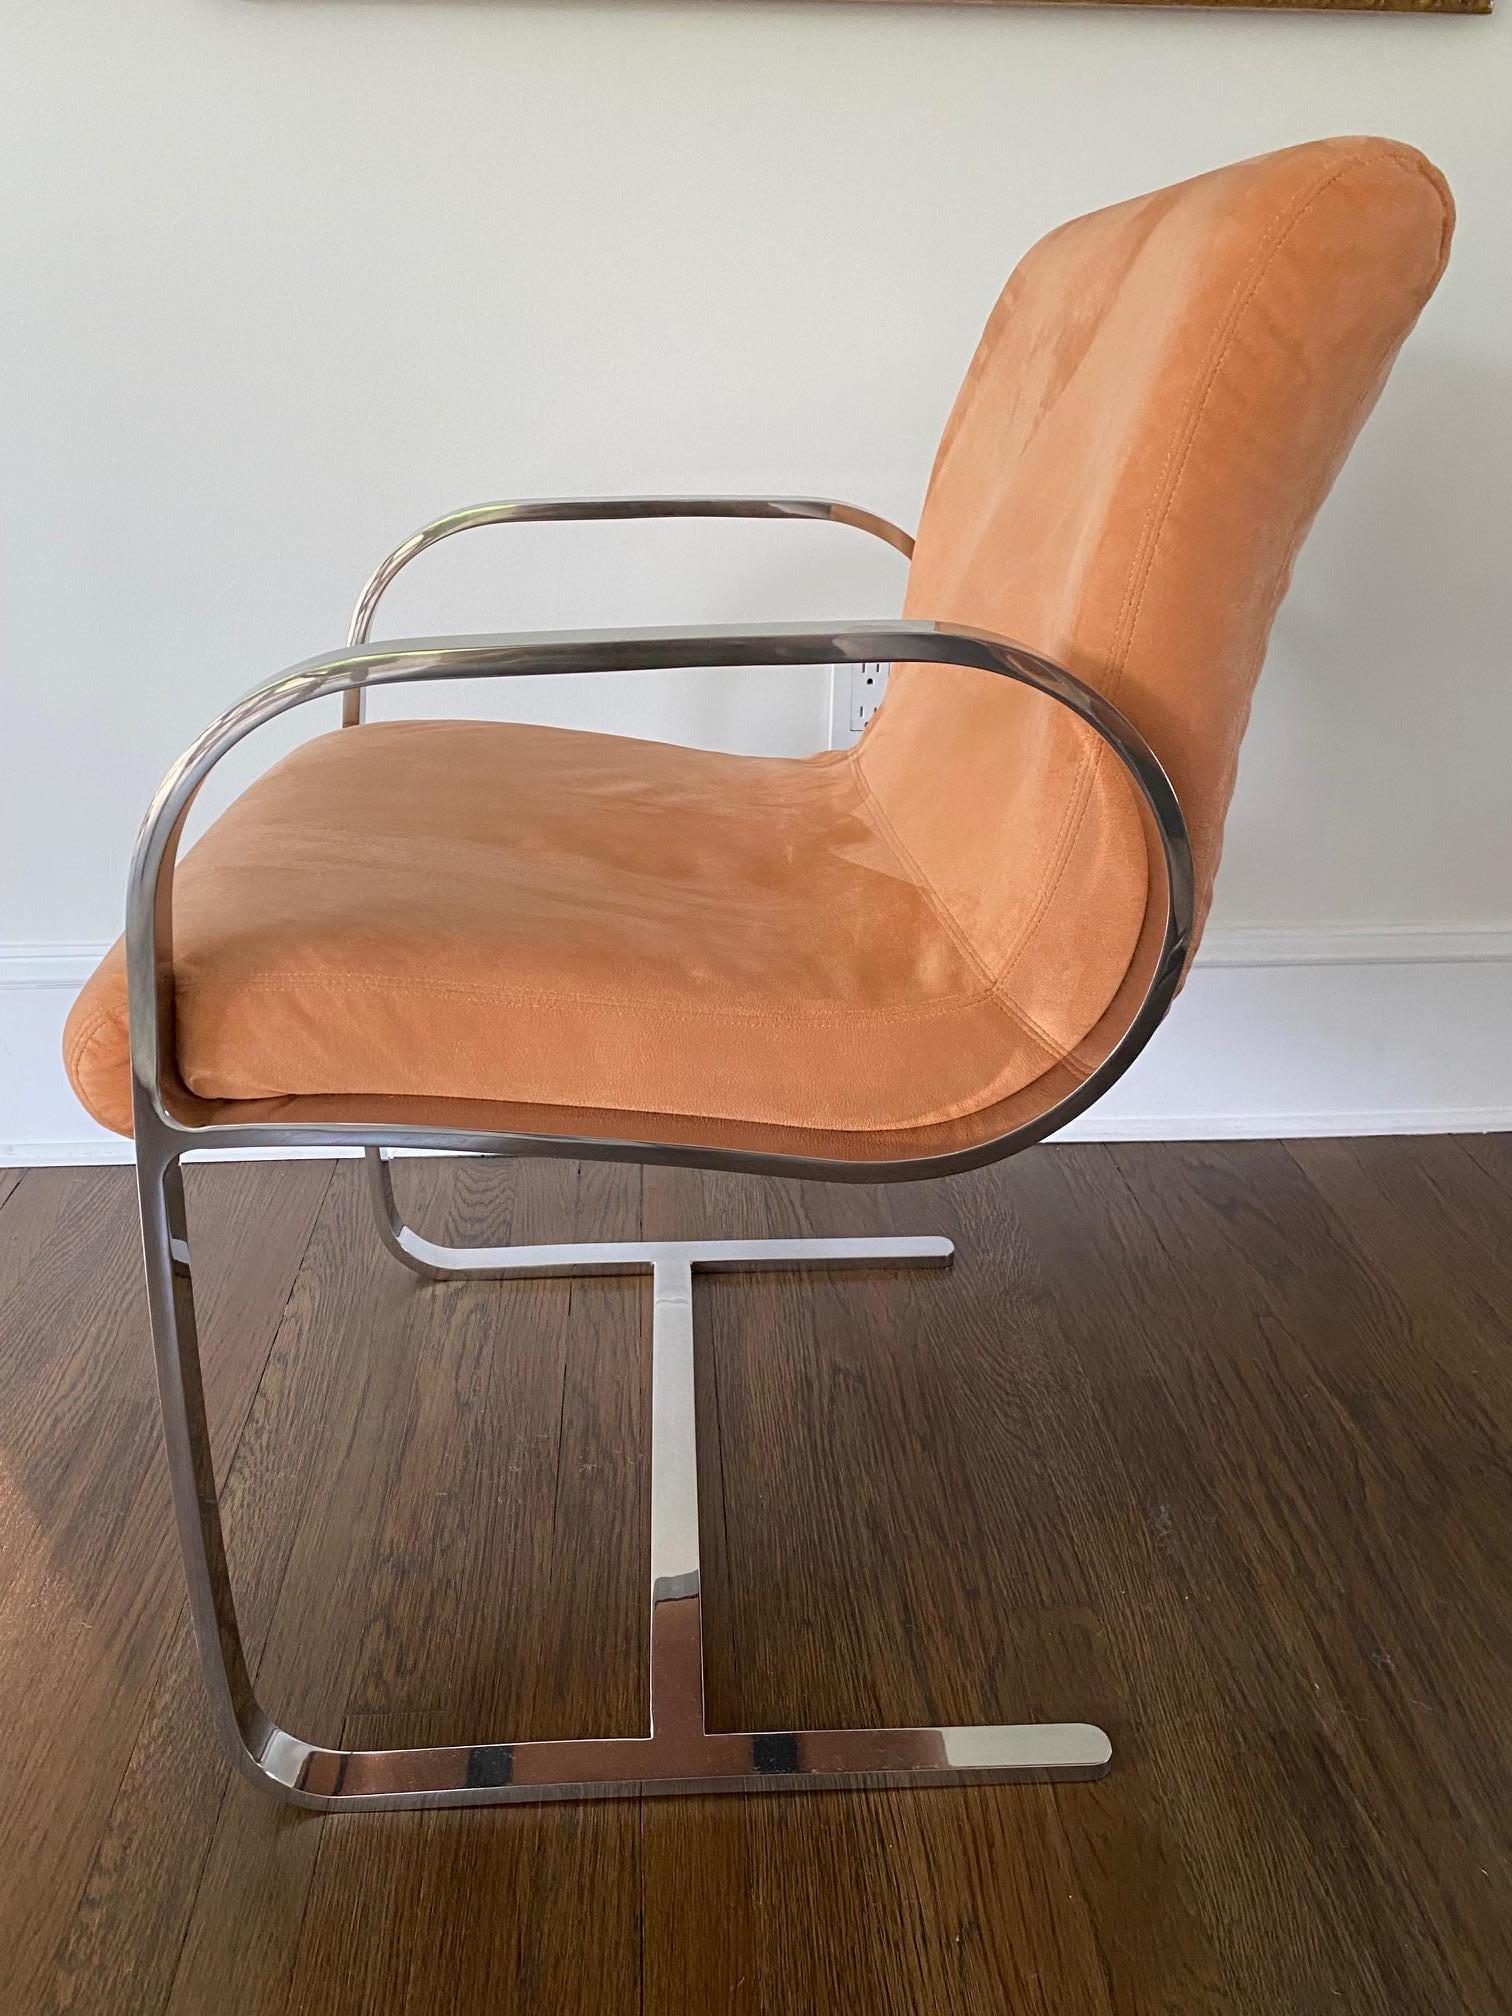 Cooles Paar moderne Sessel im Stil von Milo Baughman aus der Mitte des Jahrhunderts mit verchromten Armlehnen und Gestellen und lachsfarbener, glatter Polsterung aus Ultrawatte.

Armhöhe 25